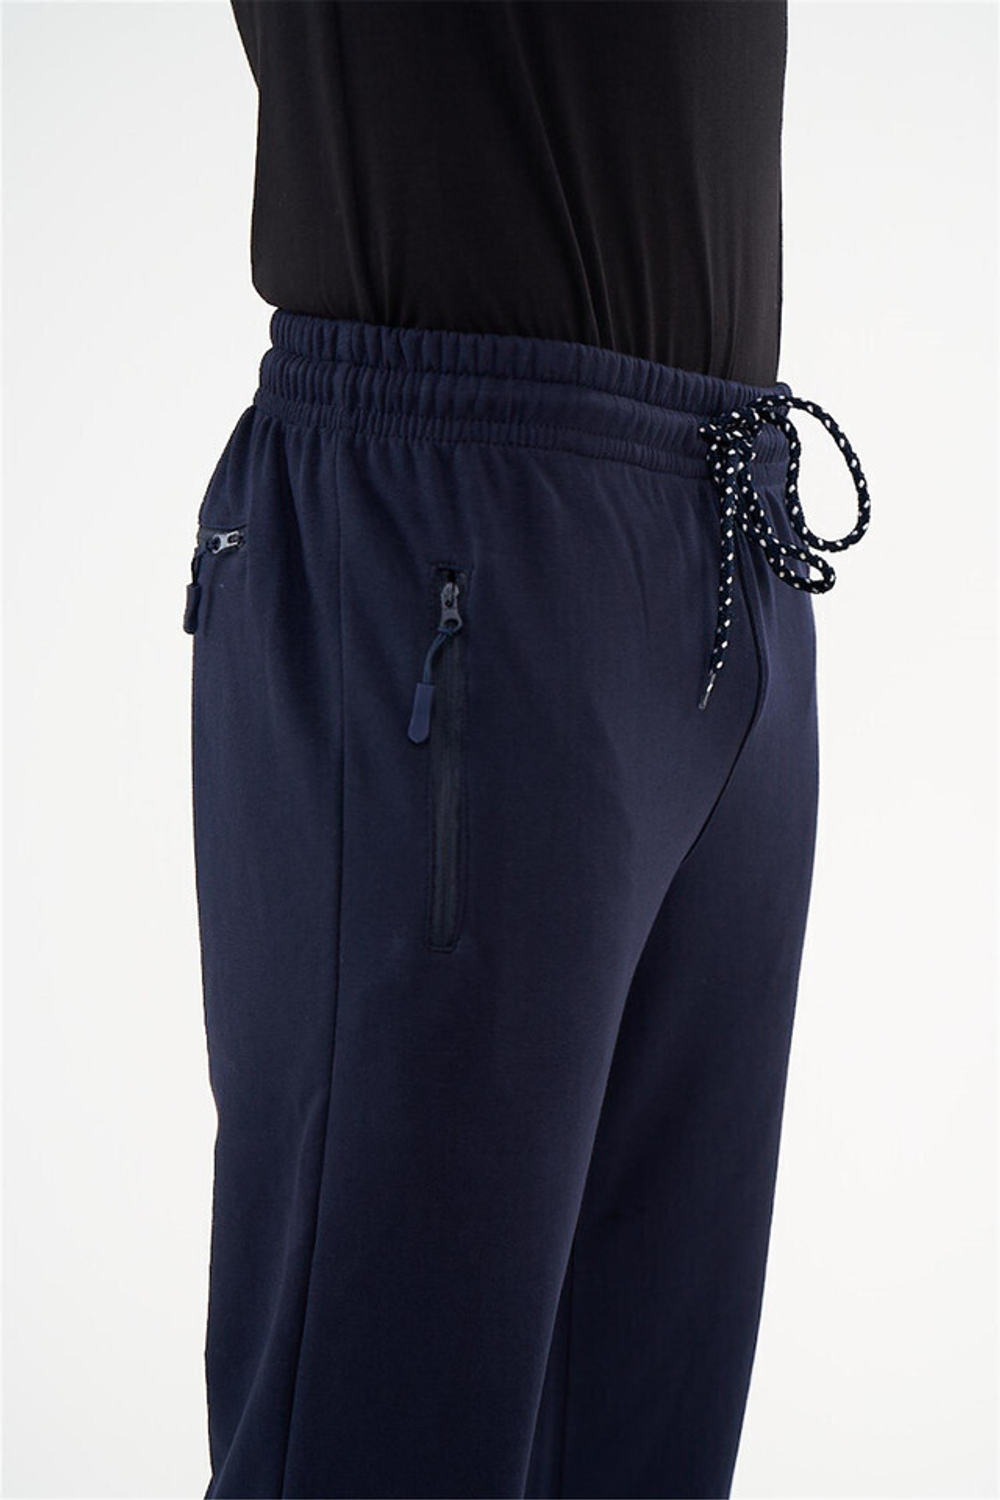 RELAX MODE / Спортивные штаны мужские без утепления хлопок прямые - 40076